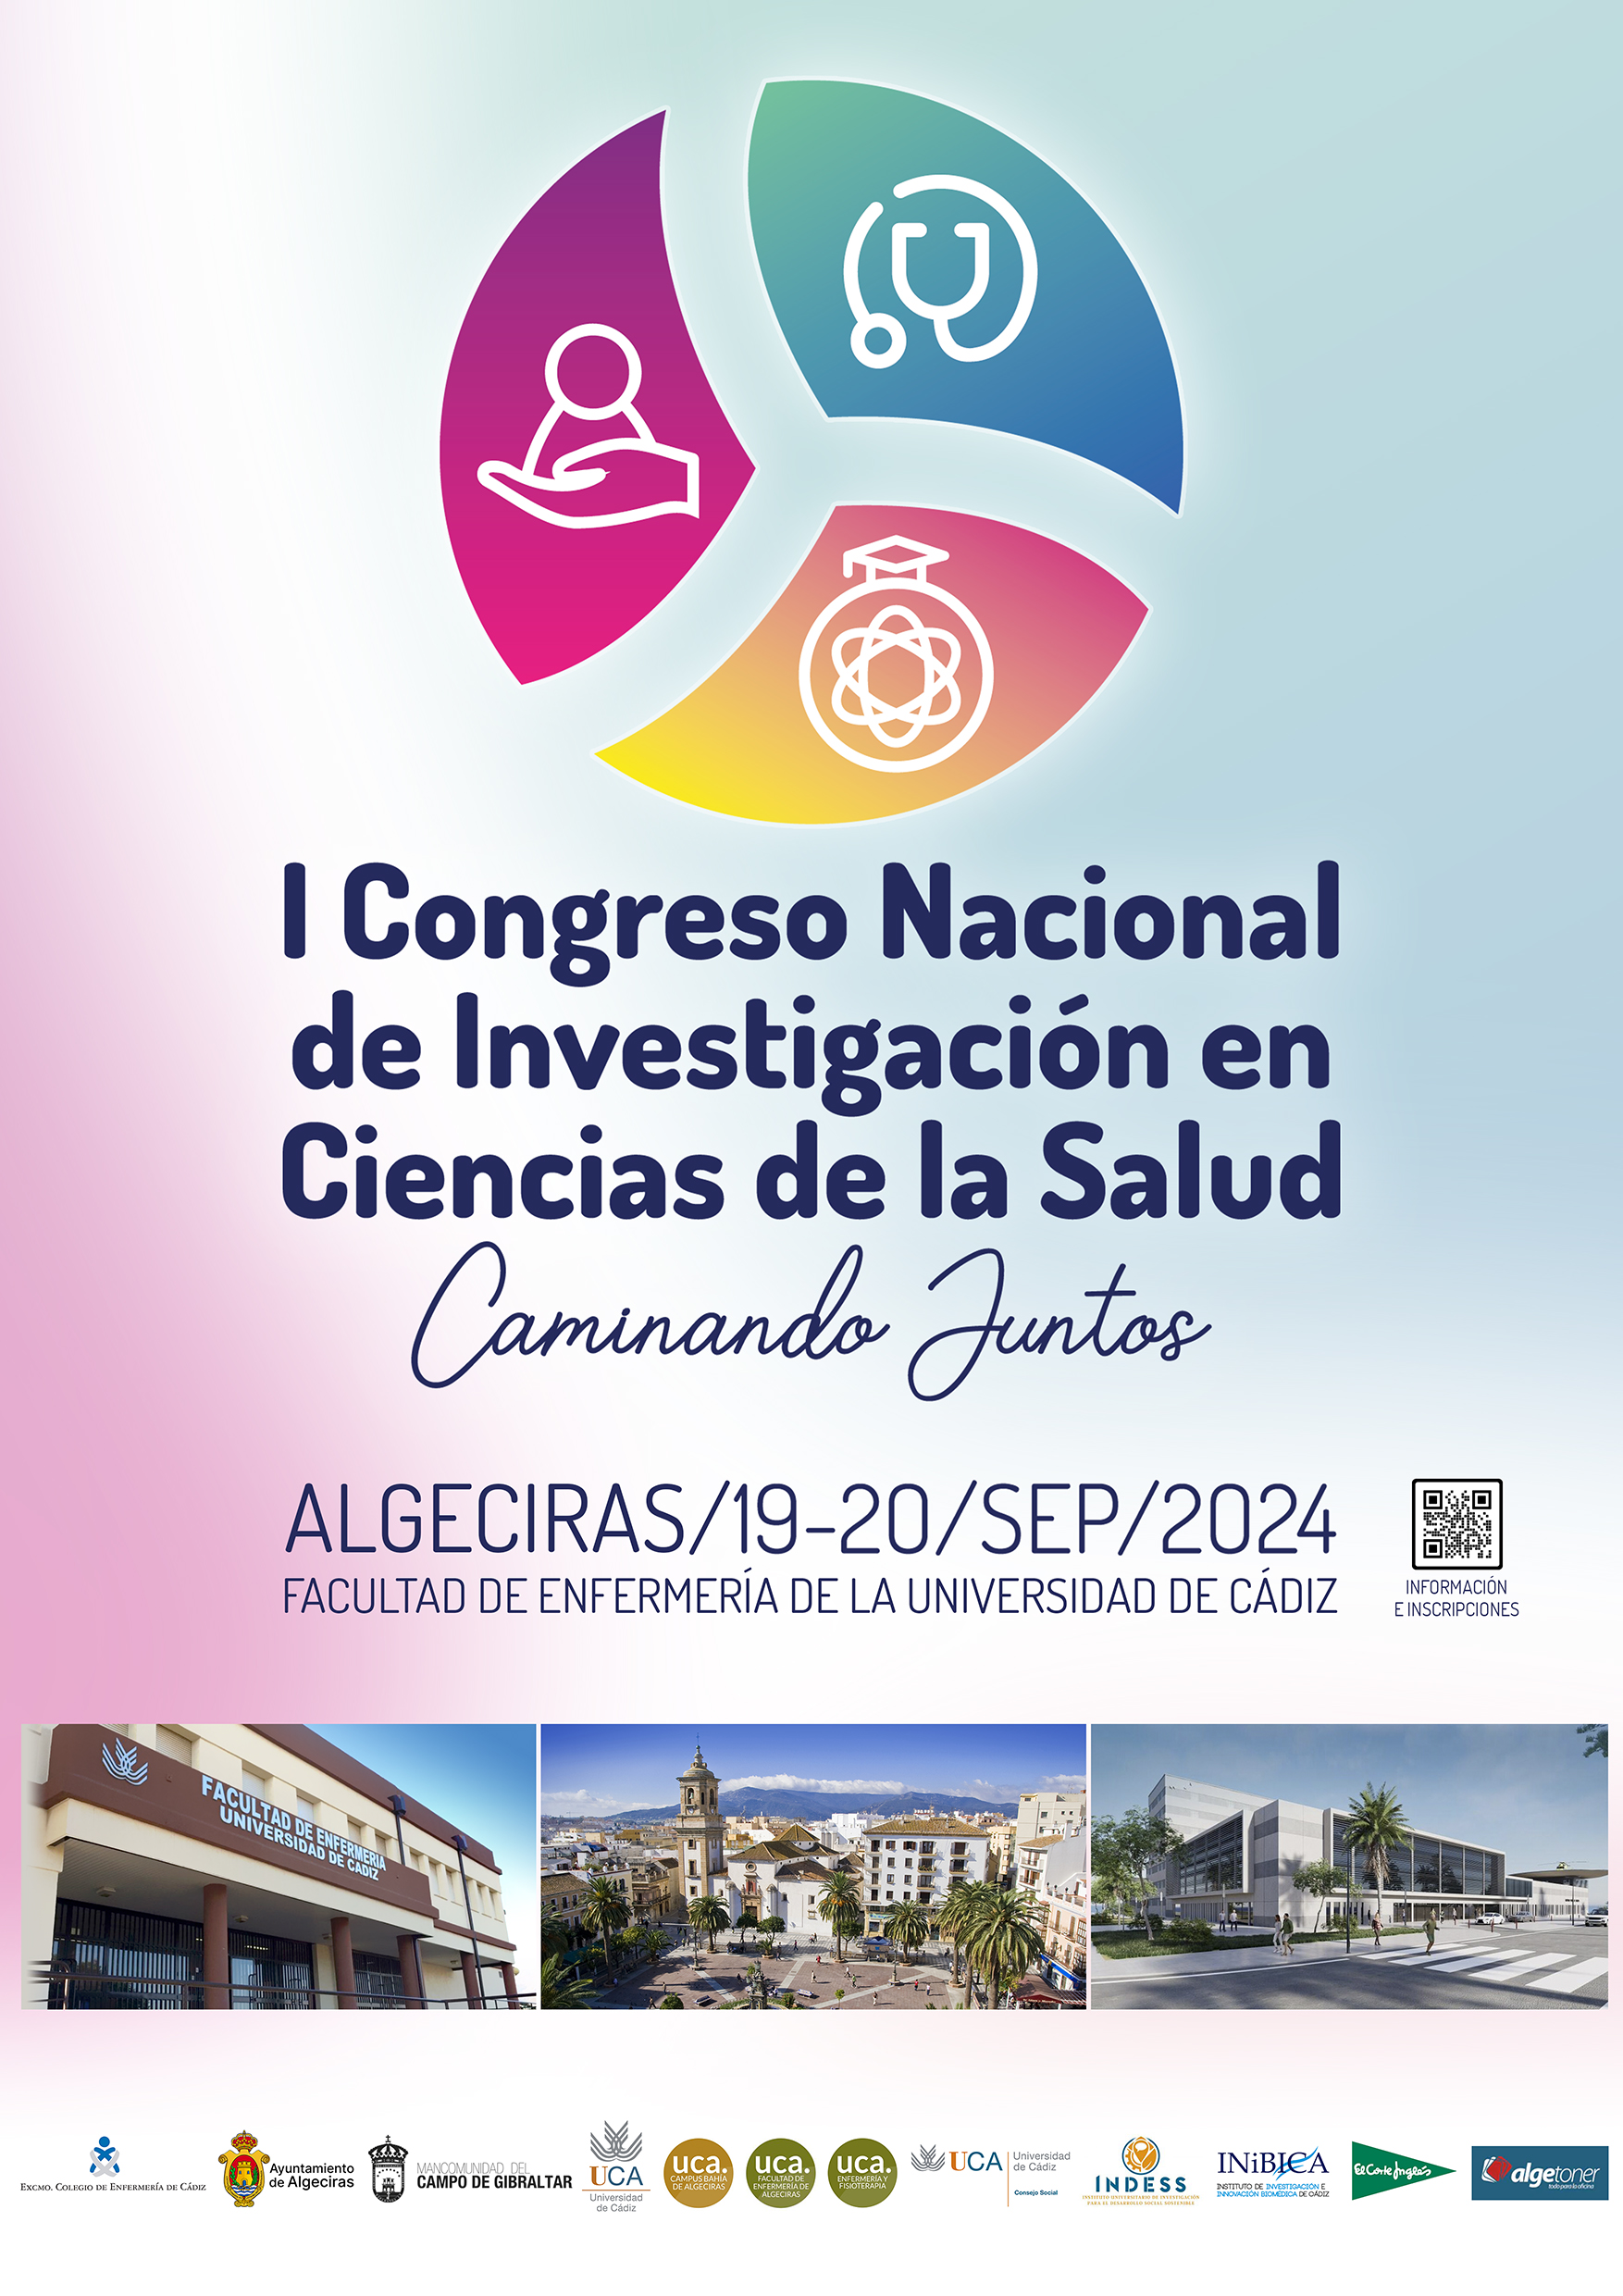 I Congreso Nacional de Investigación en Ciencias de la Salud